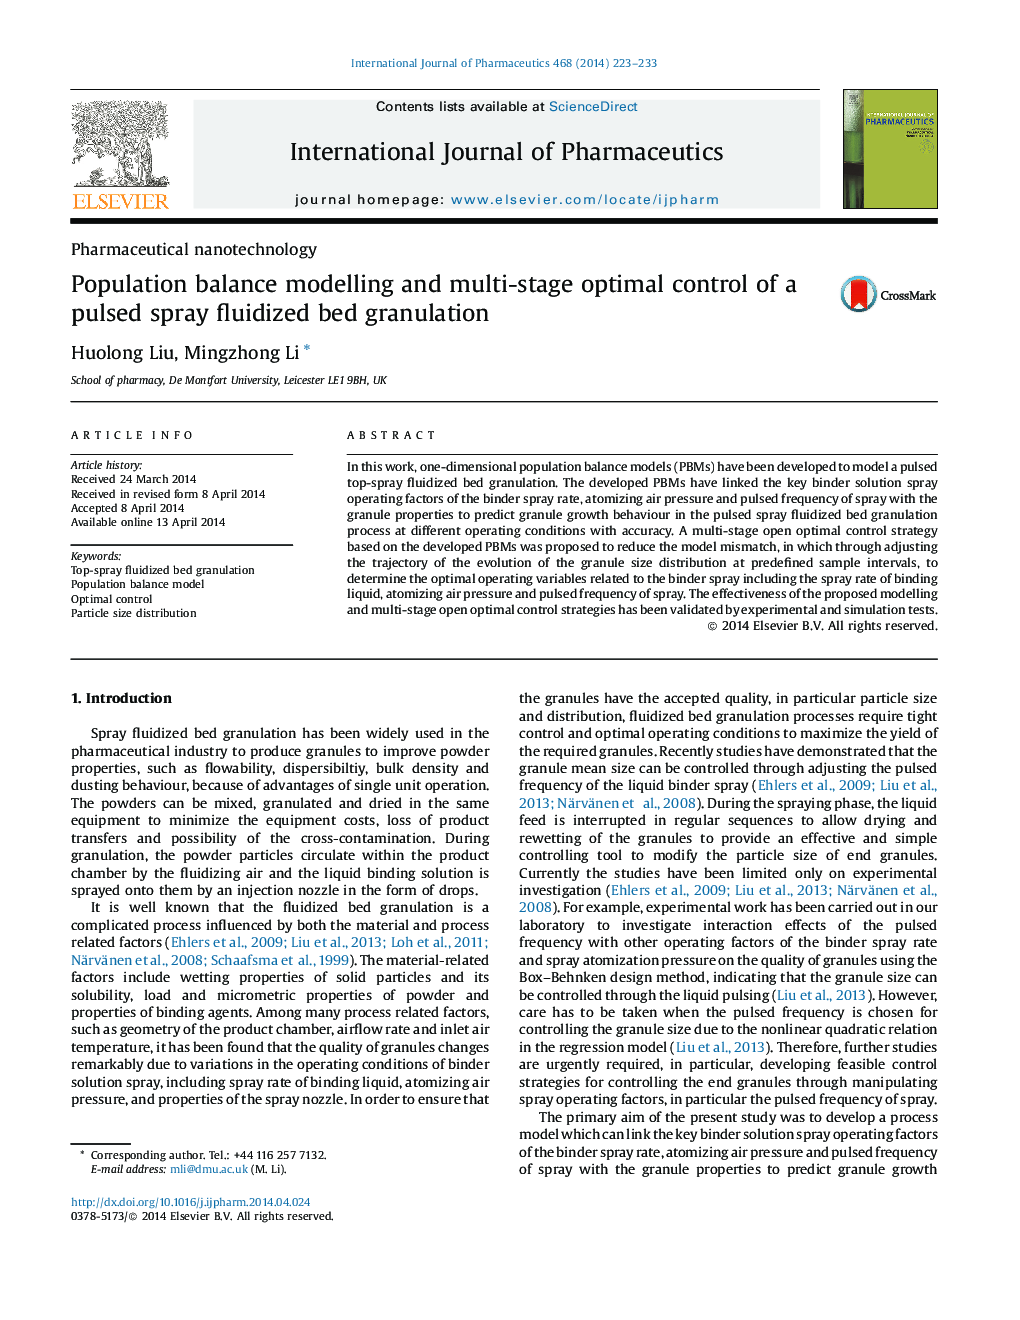 مدل سازی توازن جمعیتی و کنترل بهینه چند مرحله ای از گرانولاسیون تخت مایع اسپری پالسی 